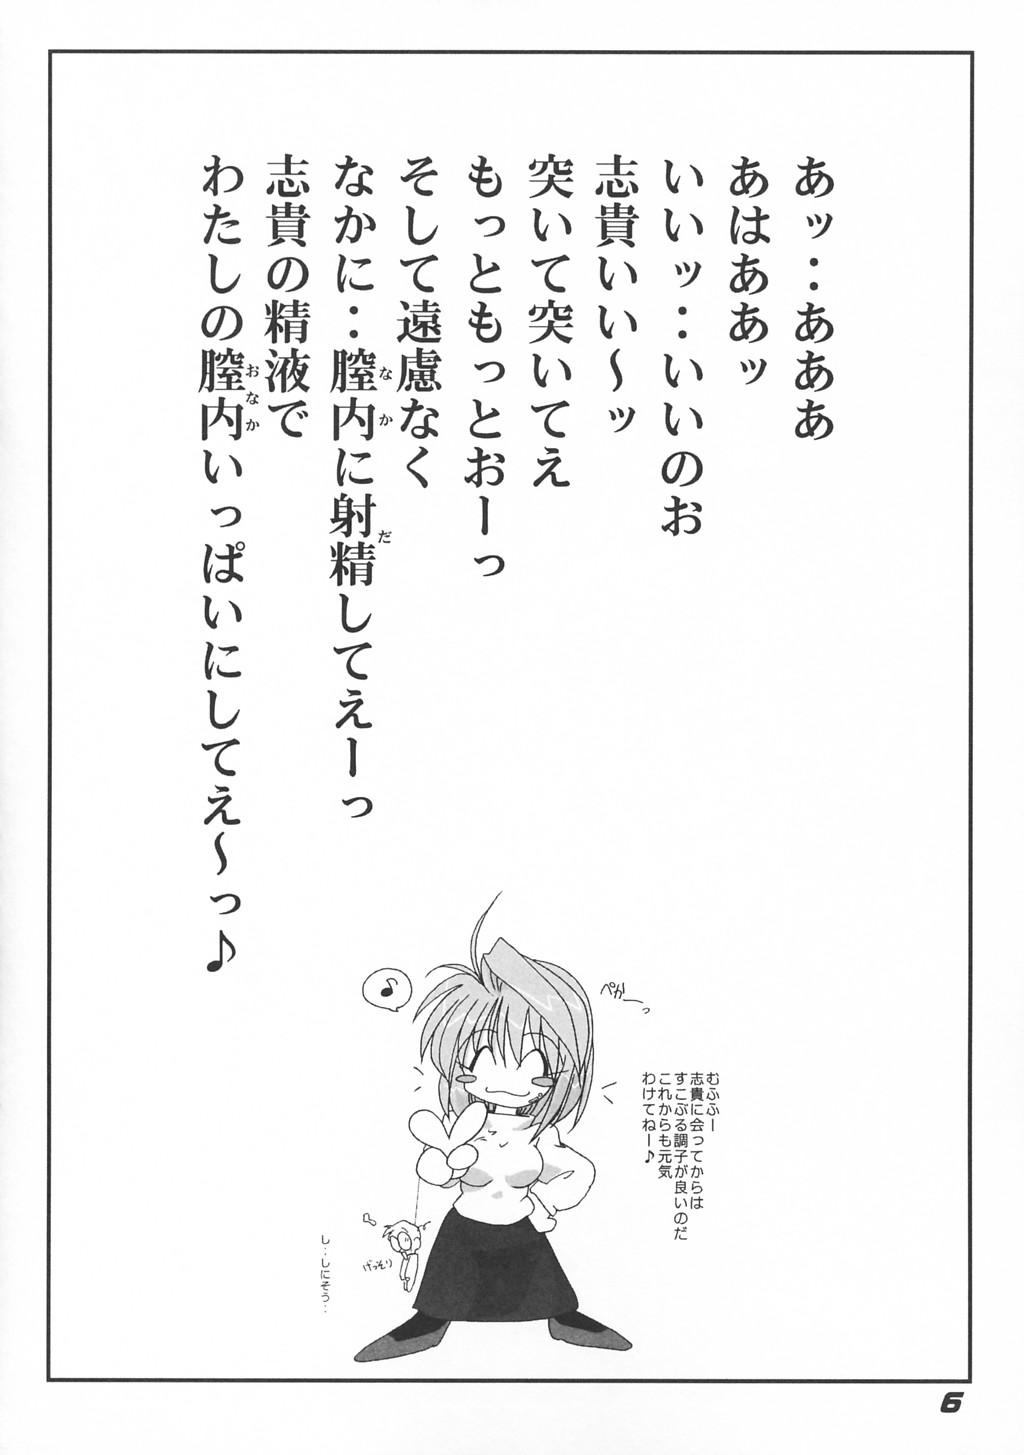 Sofa [Kieiza cmp] N+ [N-Plus] #7 (Tsukihime) - Tsukihime Esposa - Page 7